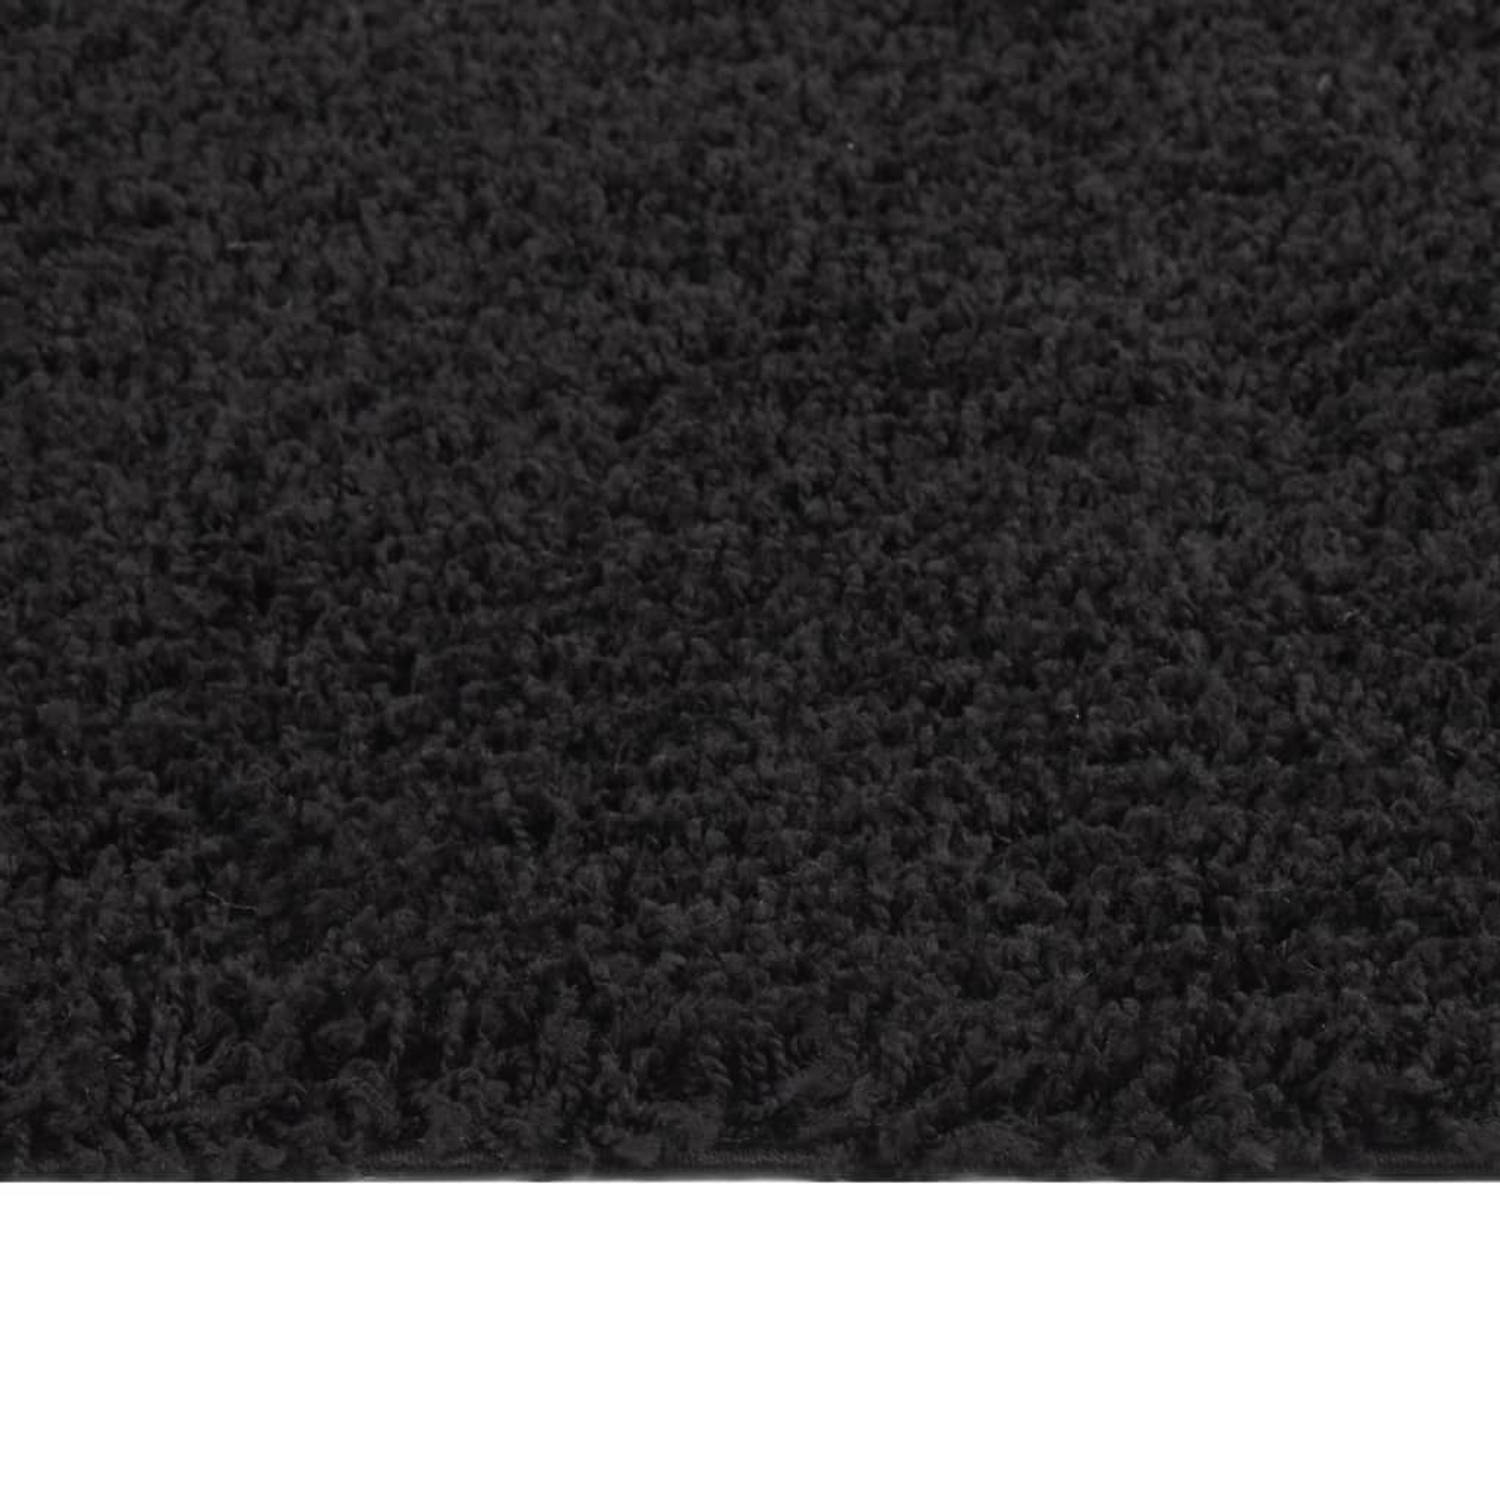 The Living Store Shaggy Vloerkleed - 140 x 200 cm - zwart - 100% PP - 30 mm poolhoogte